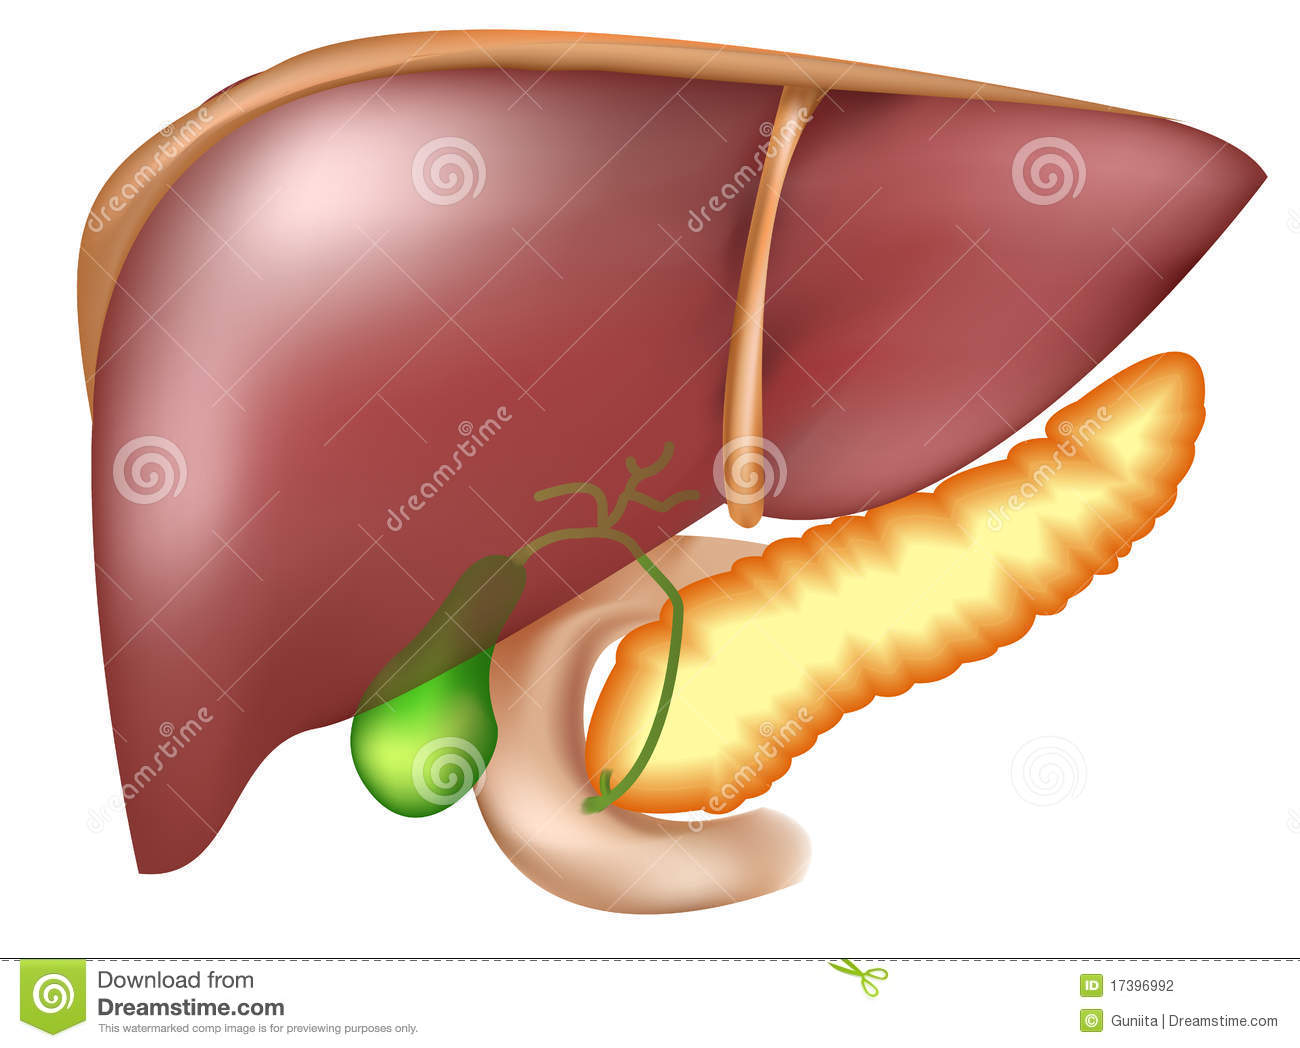 Pancreas Clipart